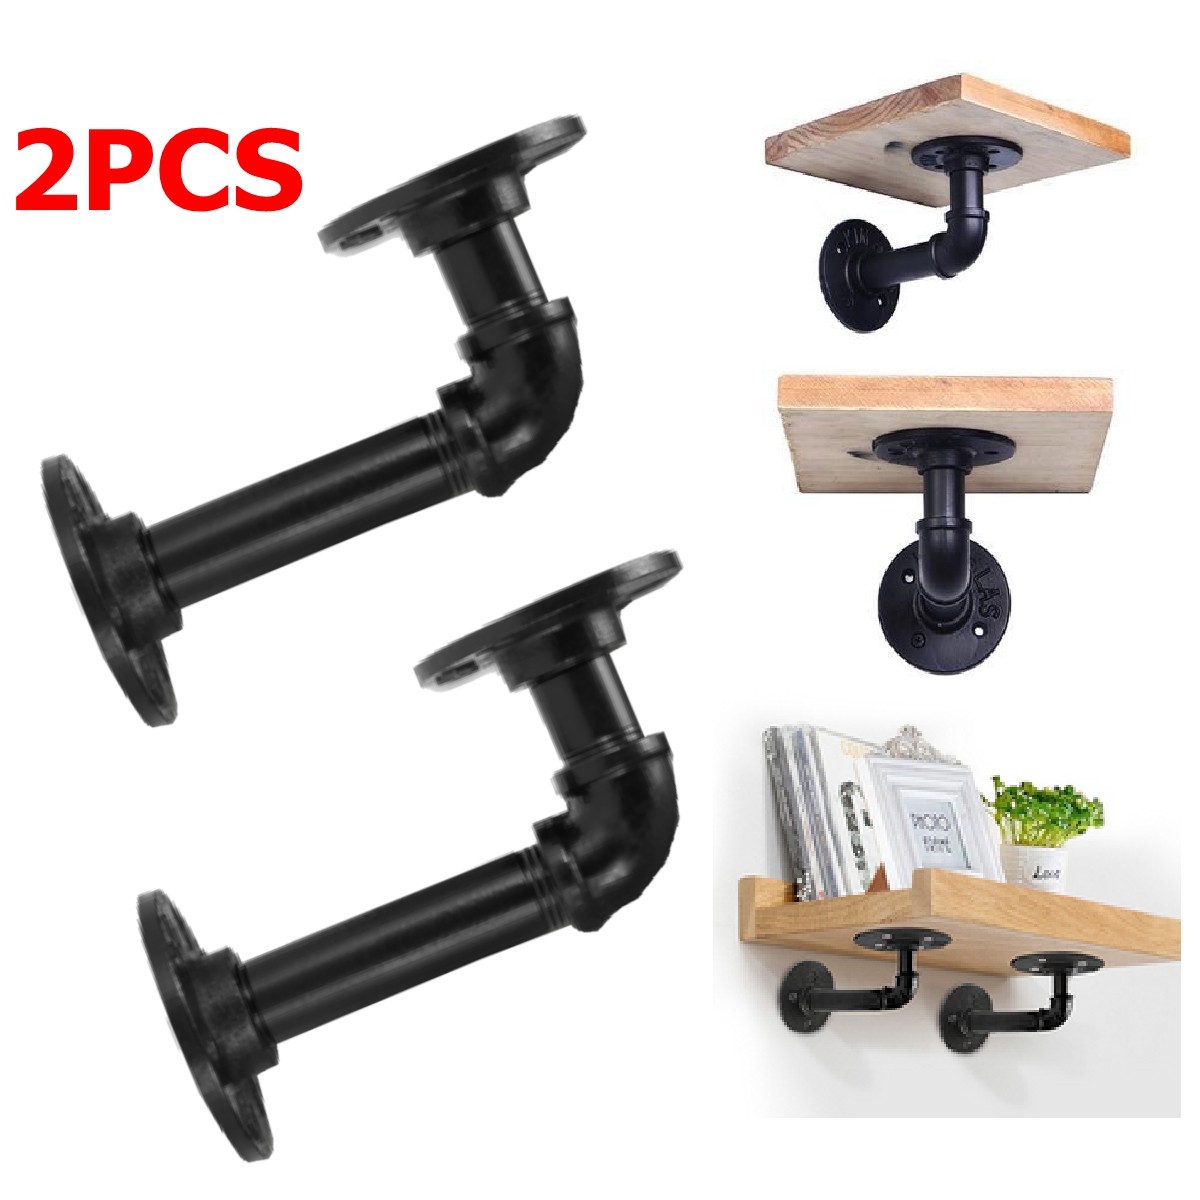 2PCS-Steampunk-Industrial-Steel-Pipes-Fittings-scaffold-board-shelf-brackets-1632854-4